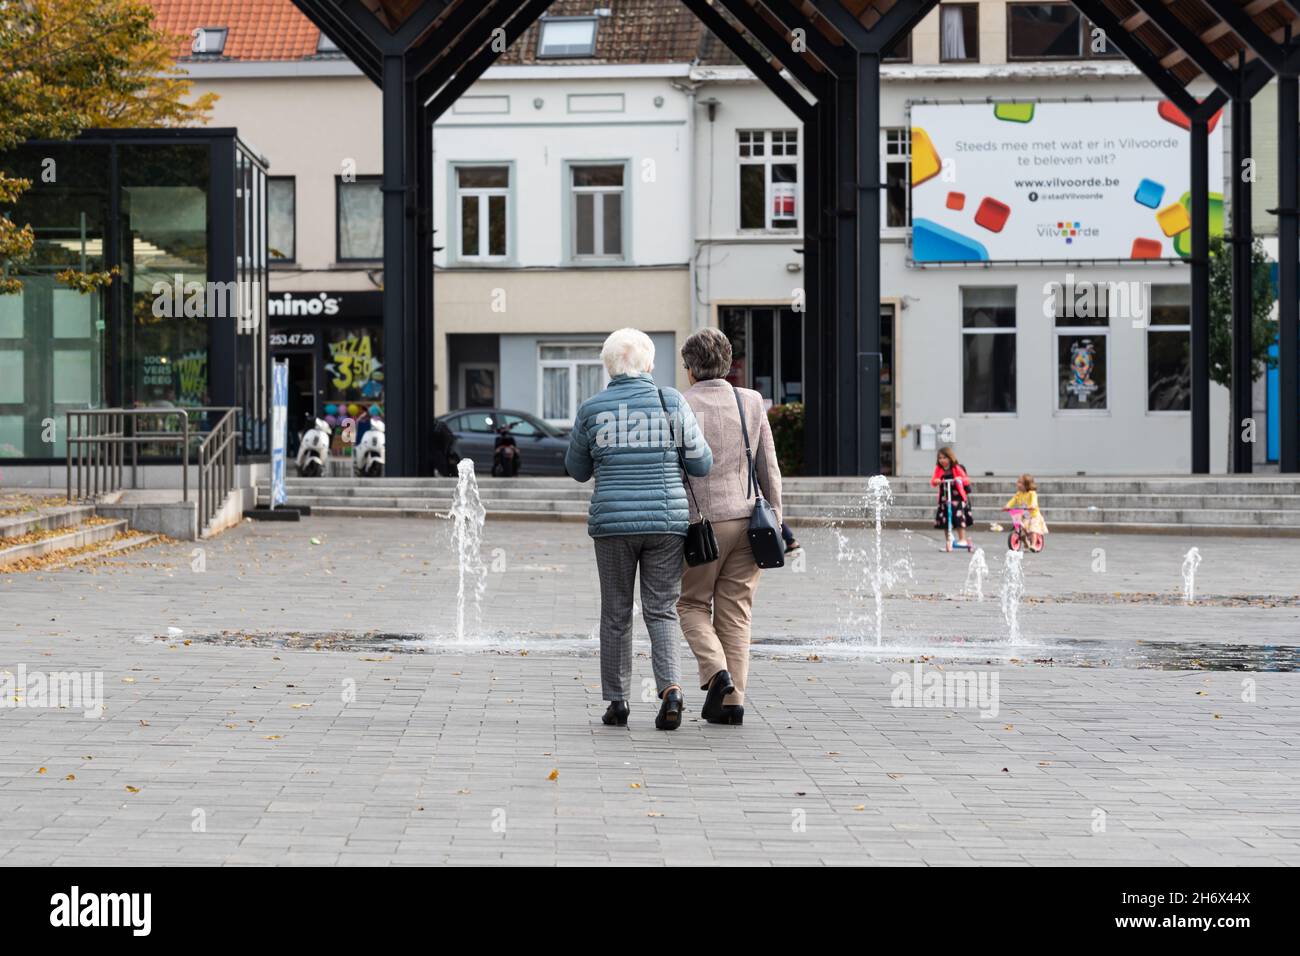 Vilvoorde, Flämische Region - Belgien - 10 17 2021: Zwei ältere Frauen gehen Hand in Hand auf dem alten Marktplatz Stockfoto